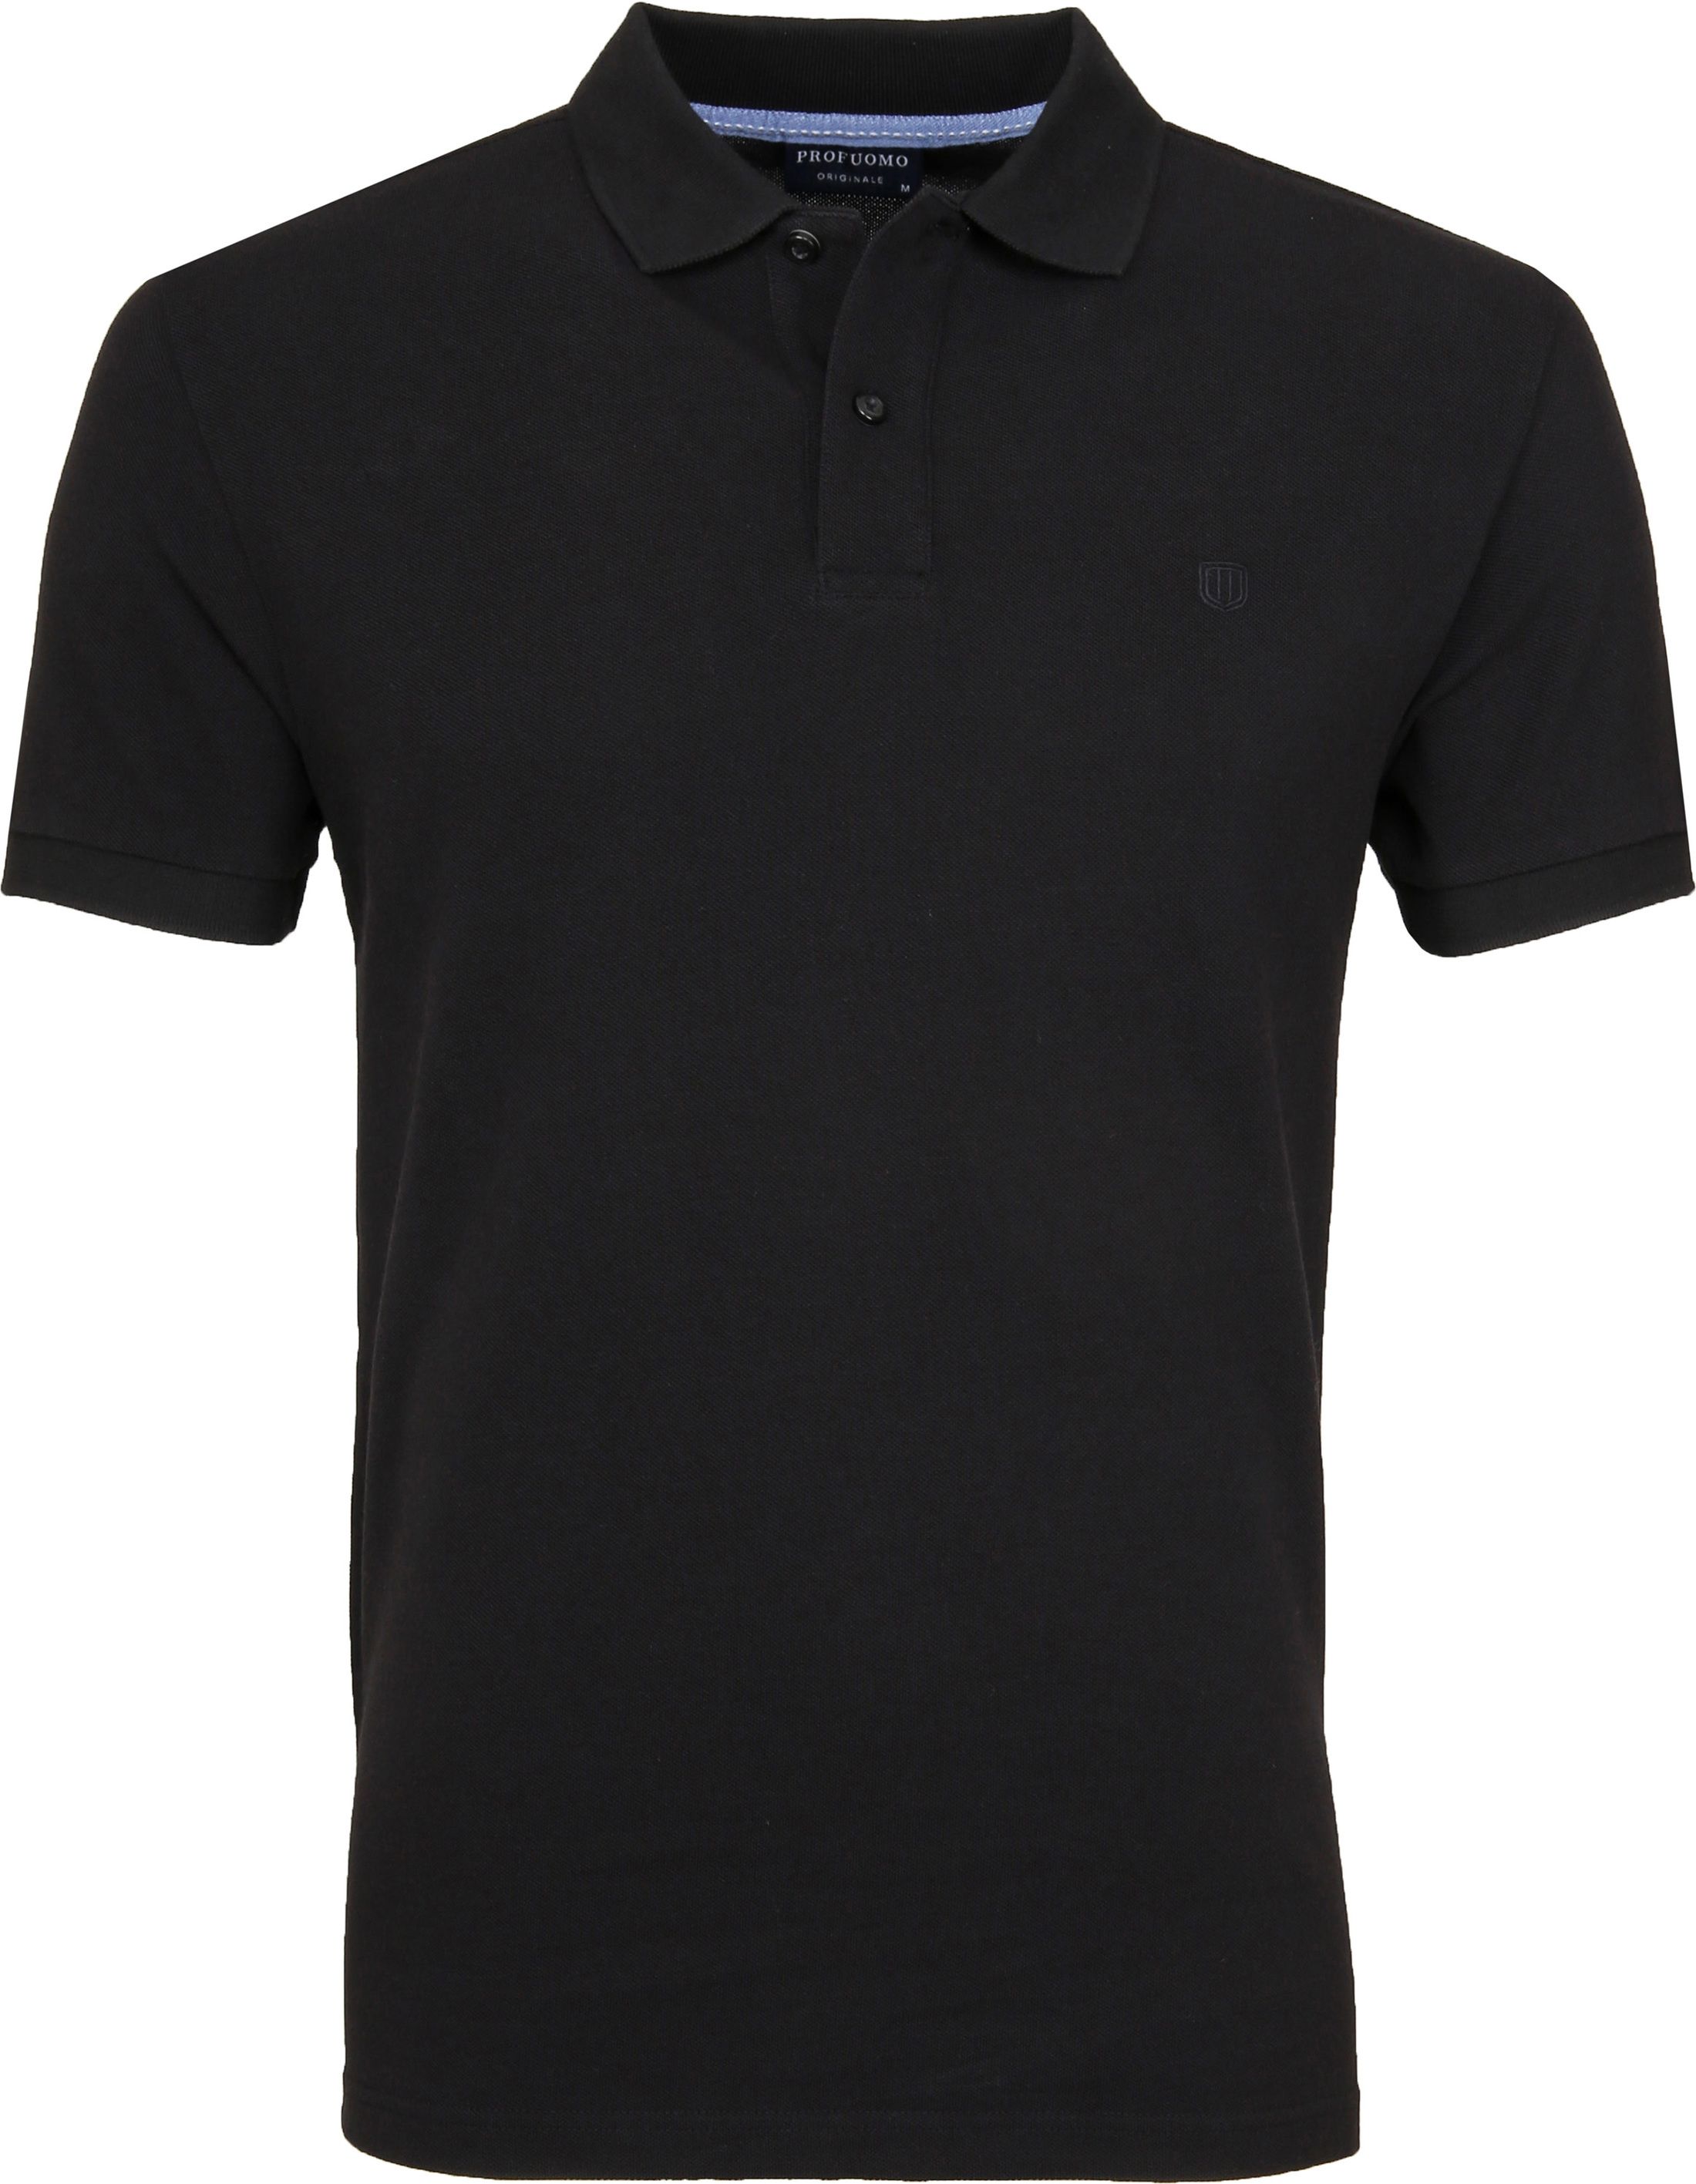 Profuomo Poloshirt Black size XL